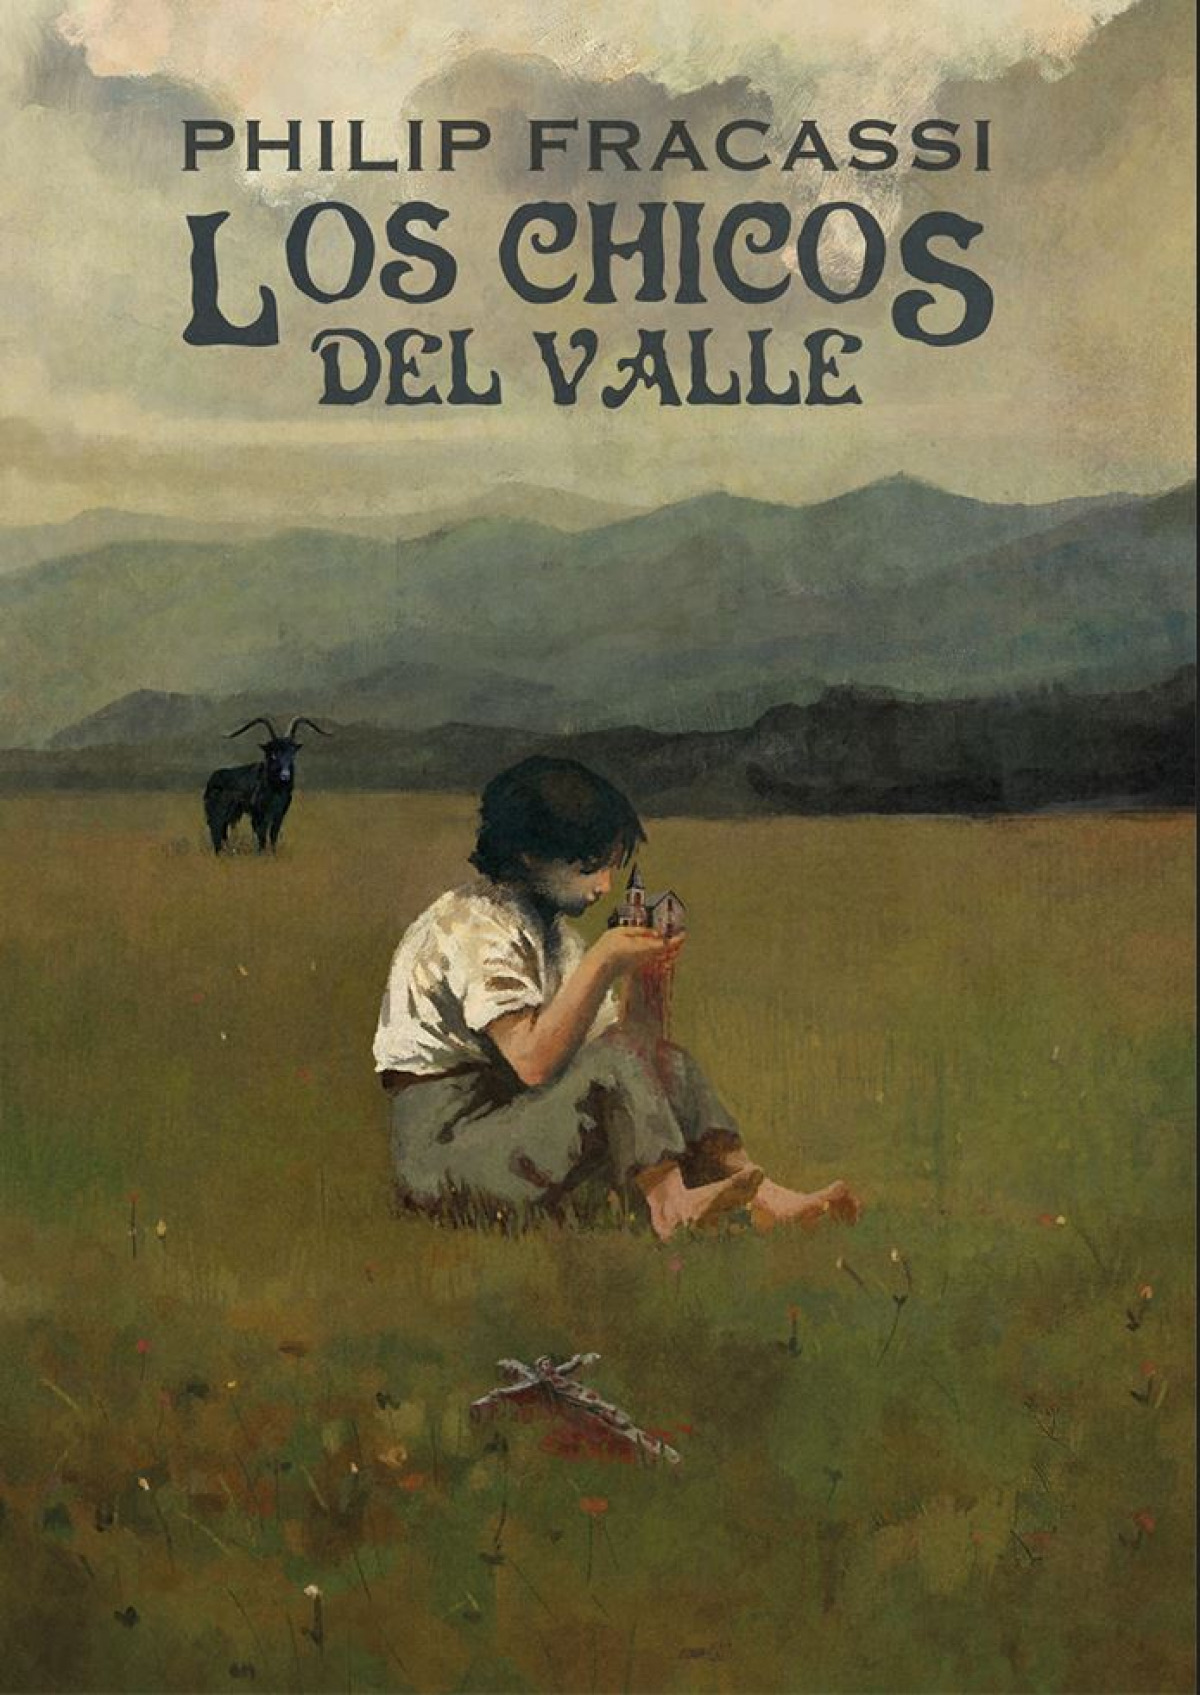 Los Chicos Del Valle added a new photo. - Los Chicos Del Valle